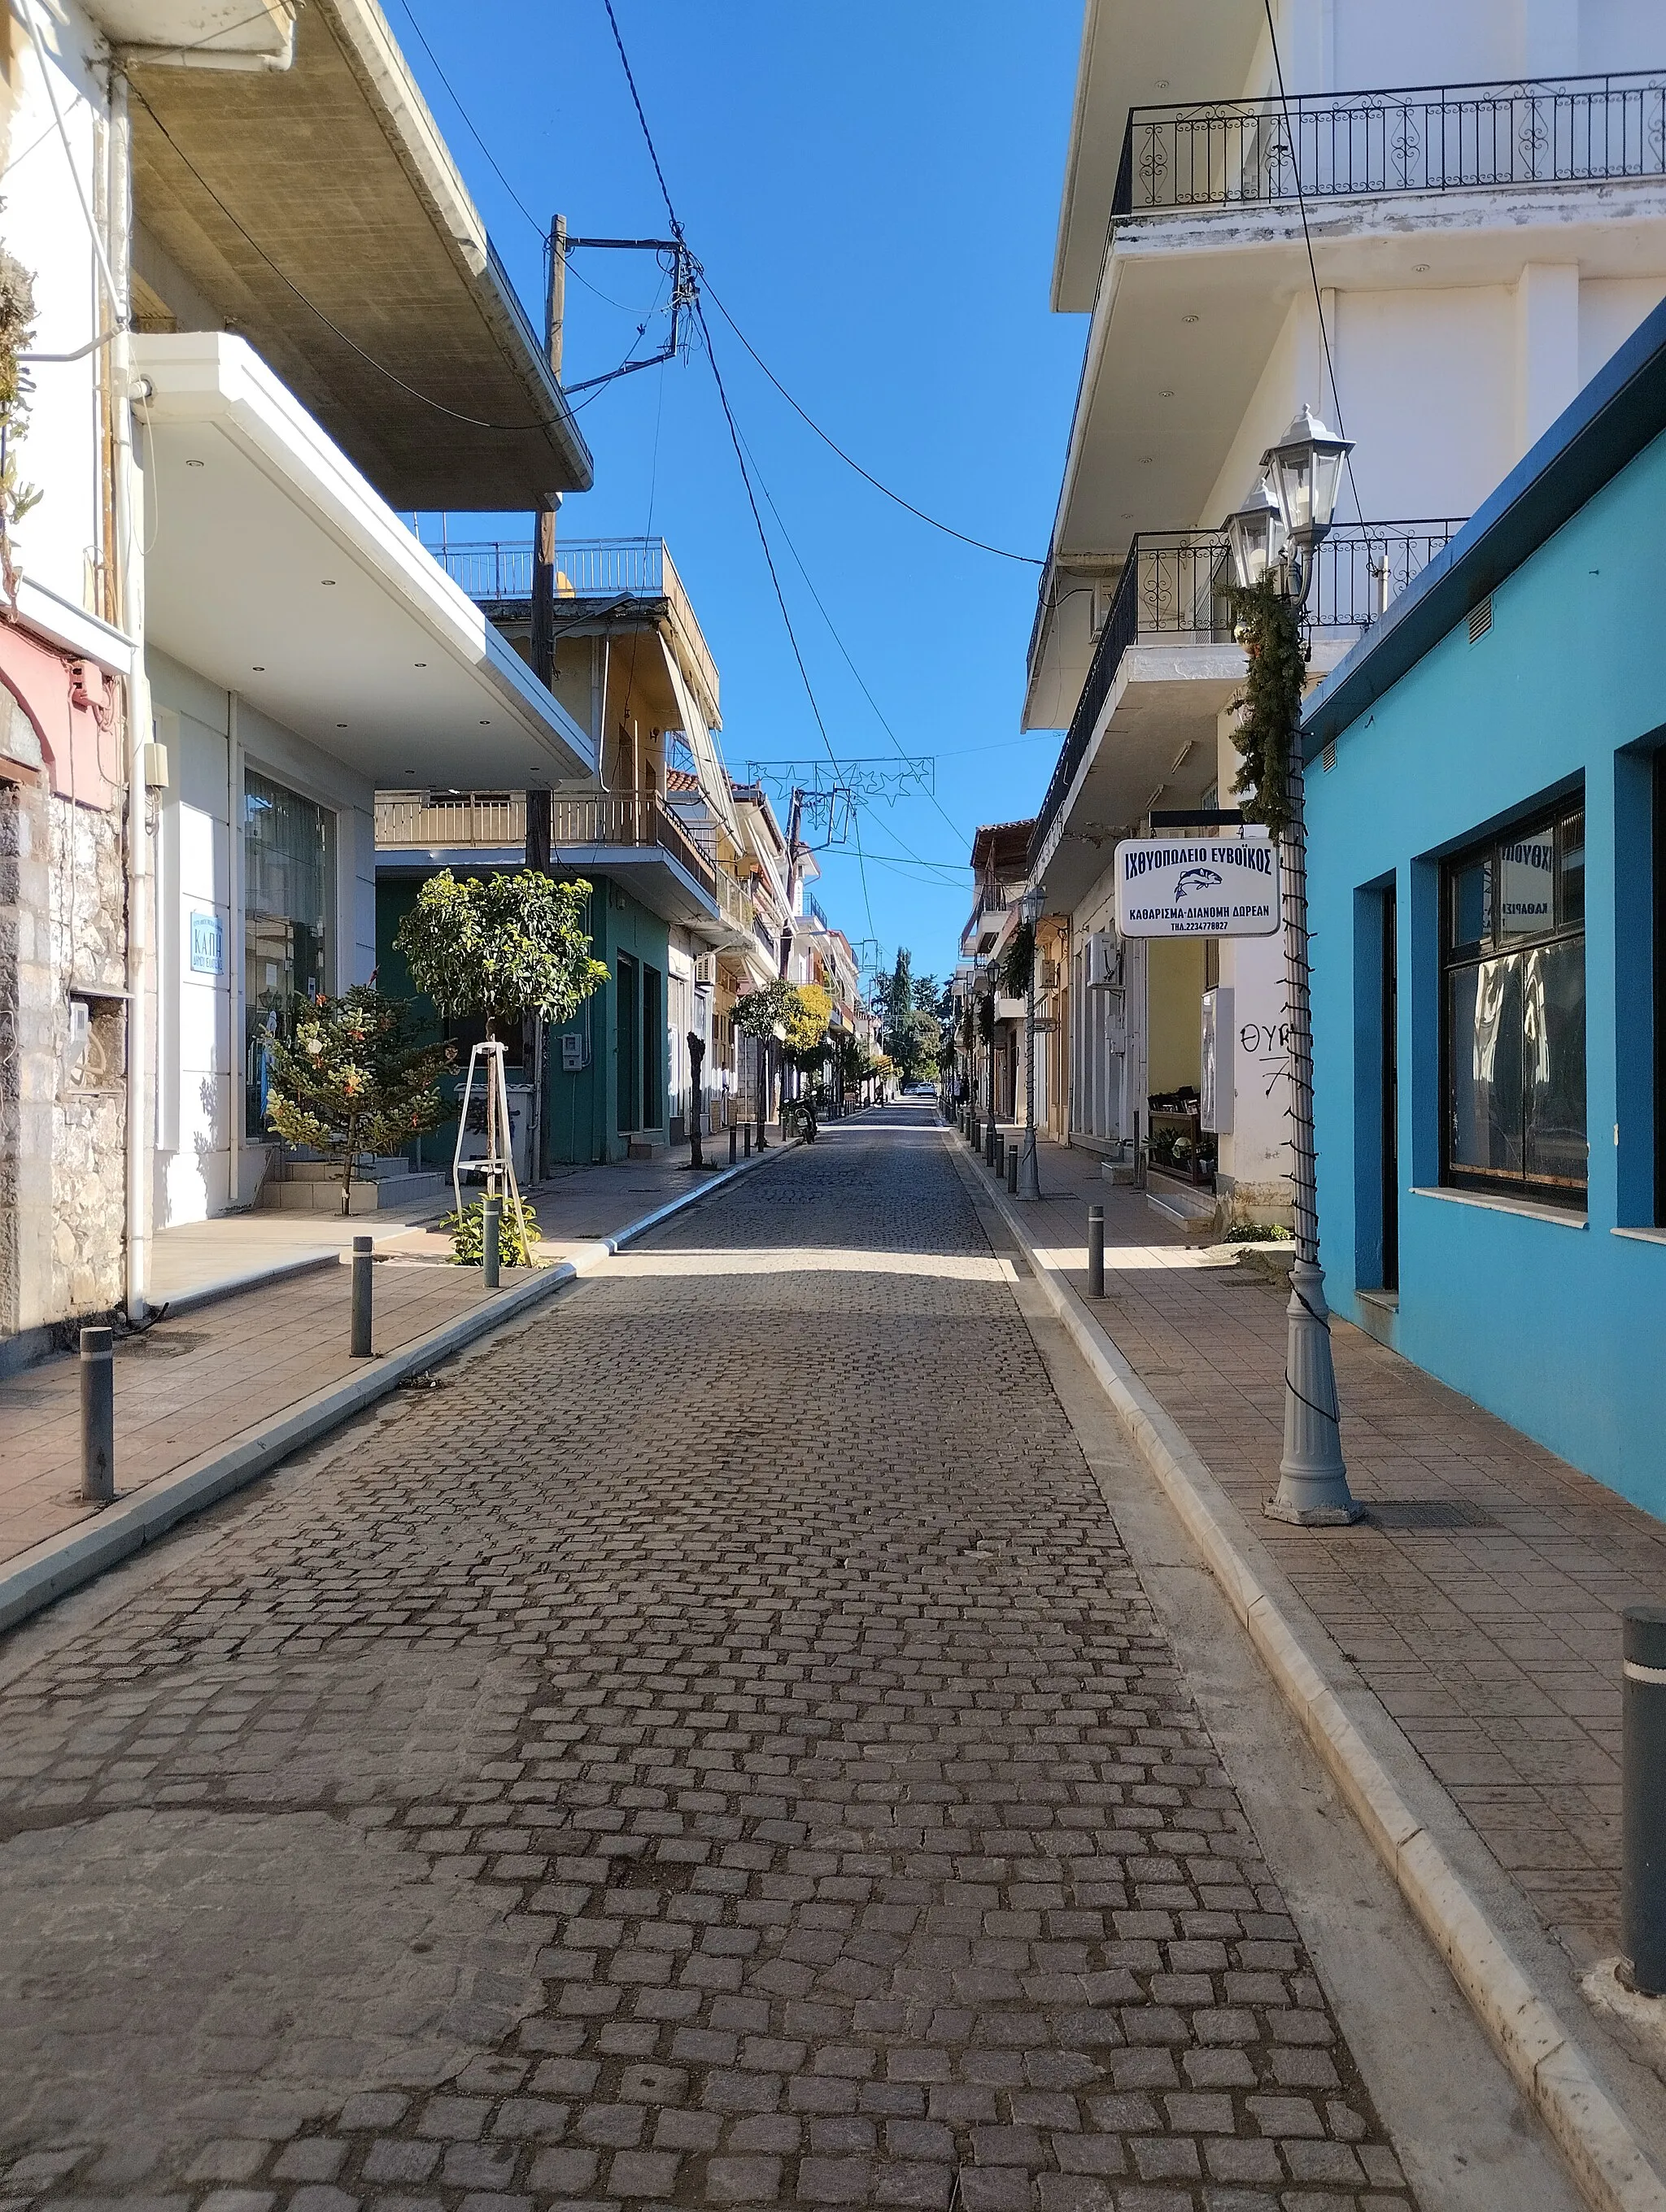 Photo showing: A street in Elateia, Fthiotis, Greece.